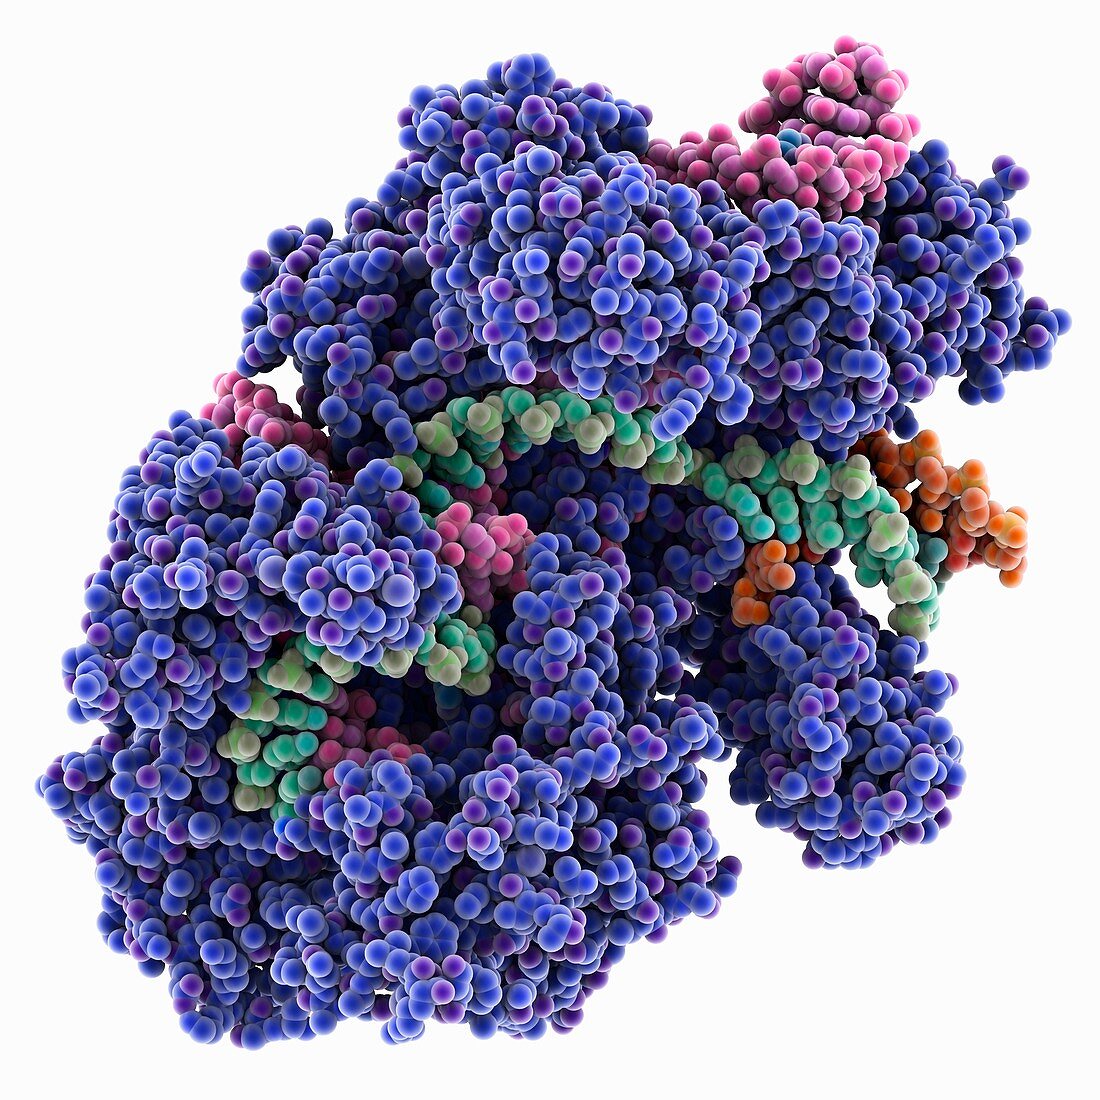 CRISPR Cas9 RNA-DNA complex